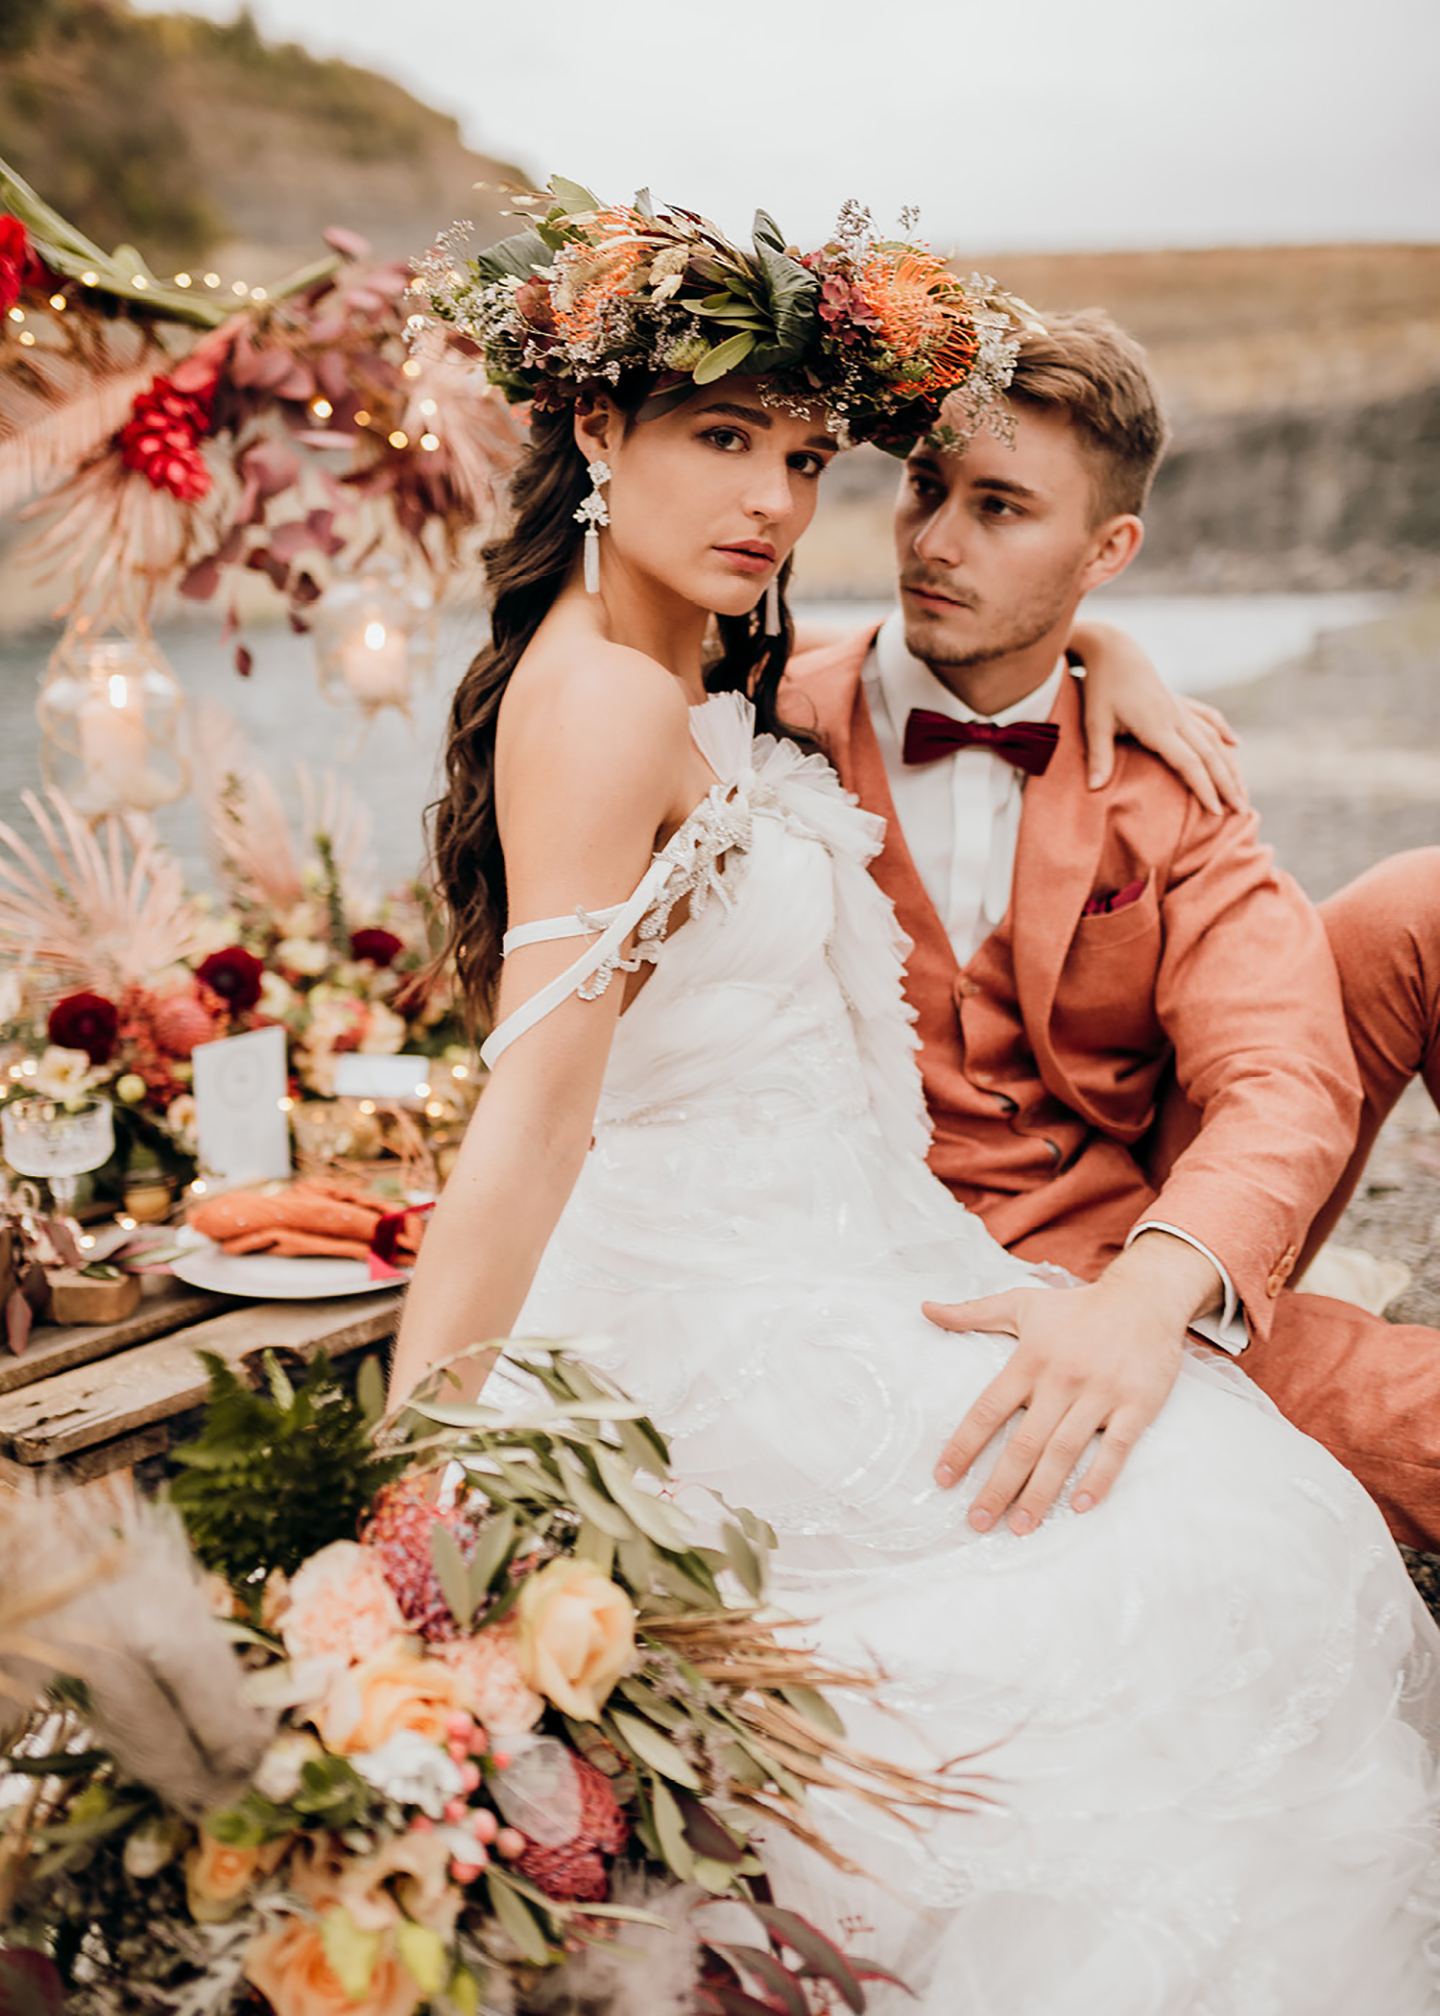 Das Brautpaar sitzt auf der selbstgemachten Hochzeitstafel, die in Rot- und Orangetönen geschmückt ist. Die Braut hat eine Blumenkrone auf ihrem Kopf.